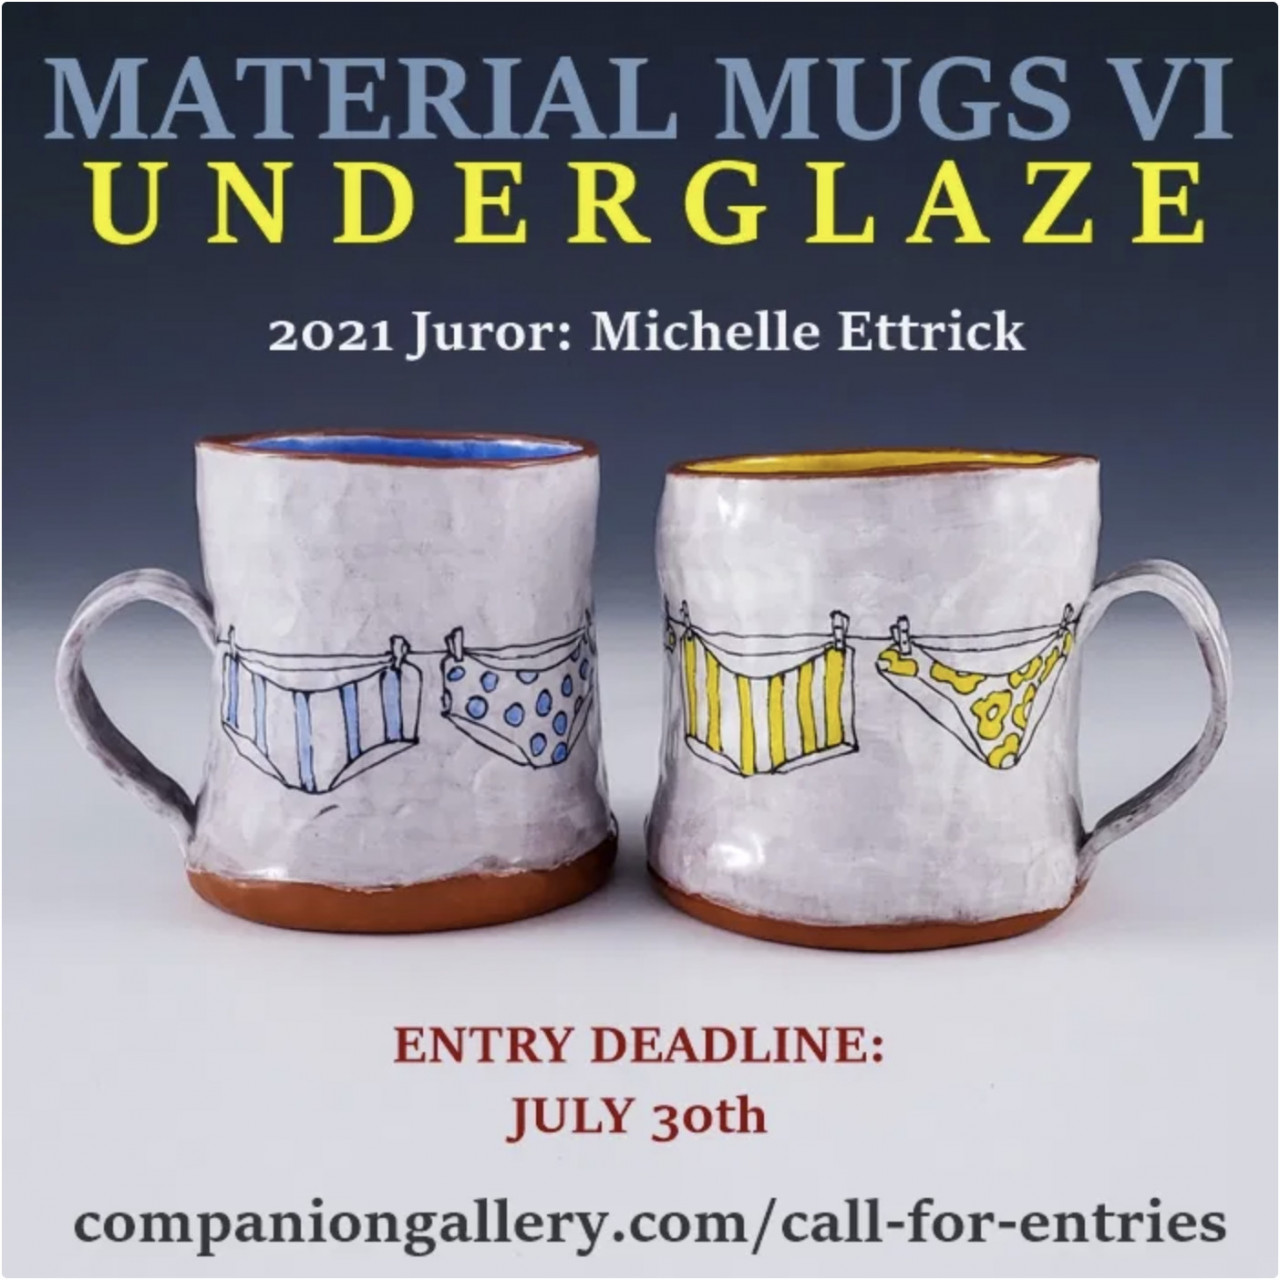 call for entry: Material Mugs VI: UNDERGLAZE